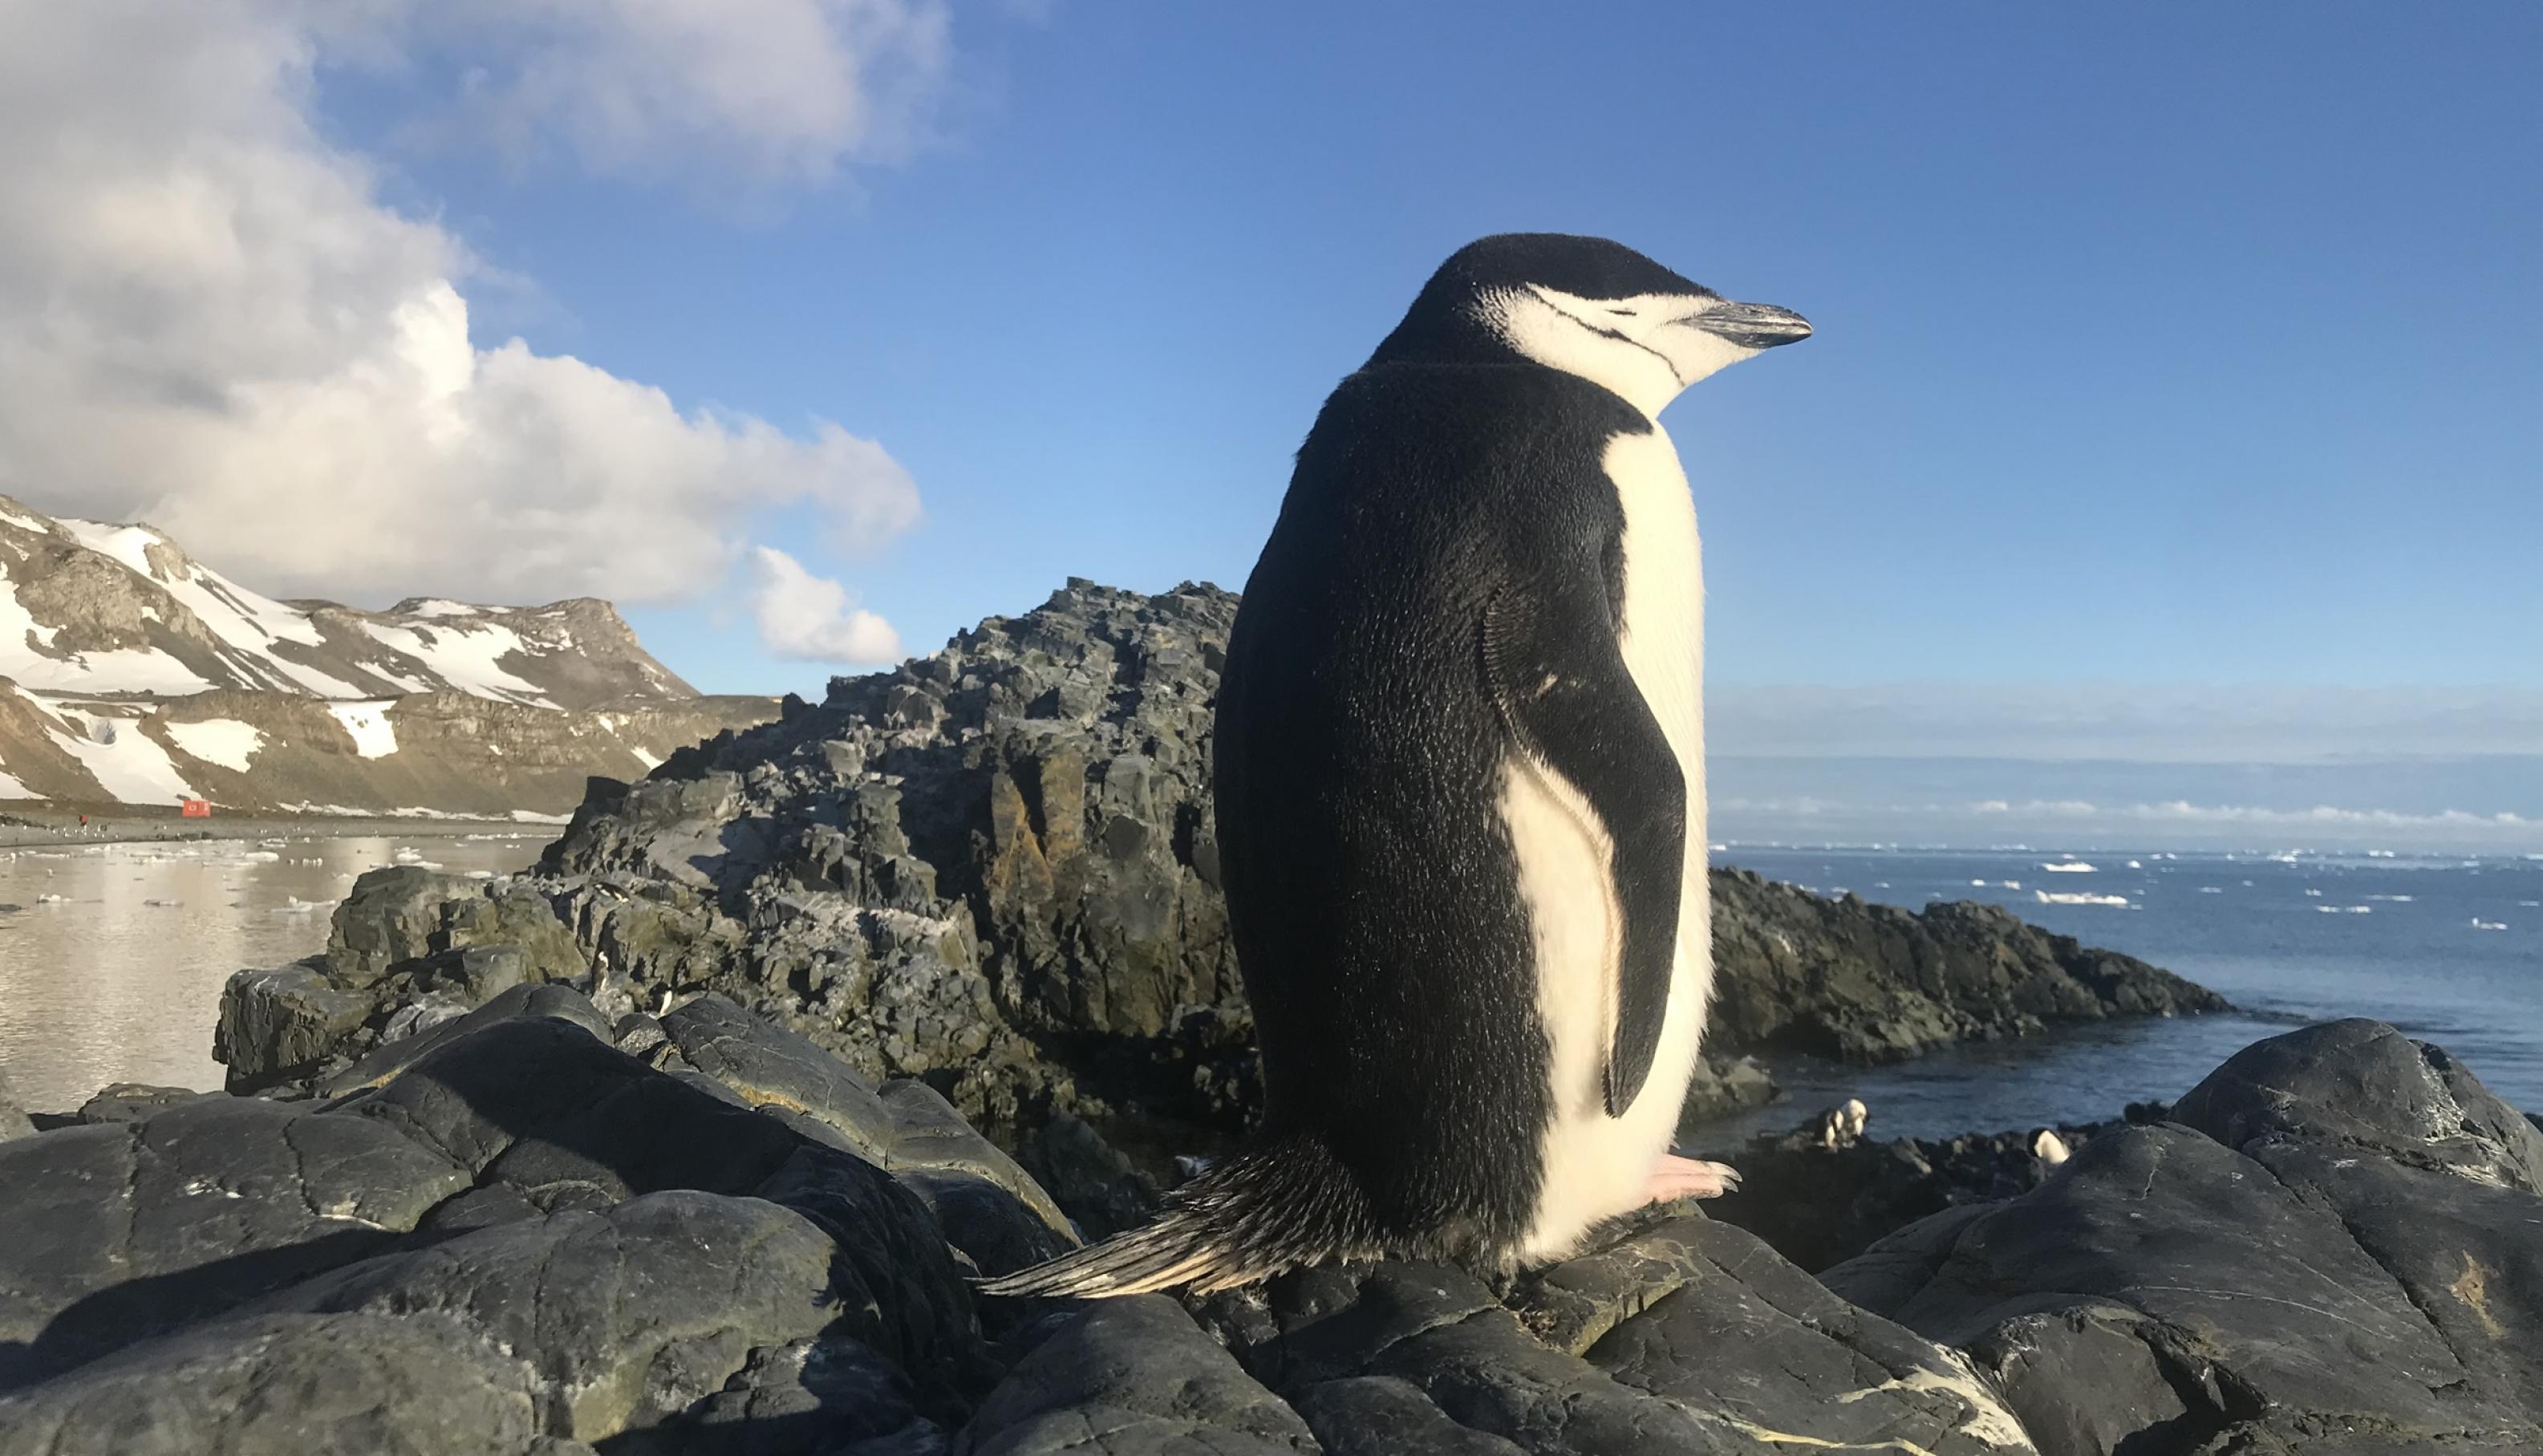 Ein Pinguin dreht uns seinen schwarzen Rücken zu. Er hat zwar die Augen geschlossen, es wirkt aber so, als würde er aufs blaue Meer schauen. Darüber der ebenfalls sehr blaue Himmel.